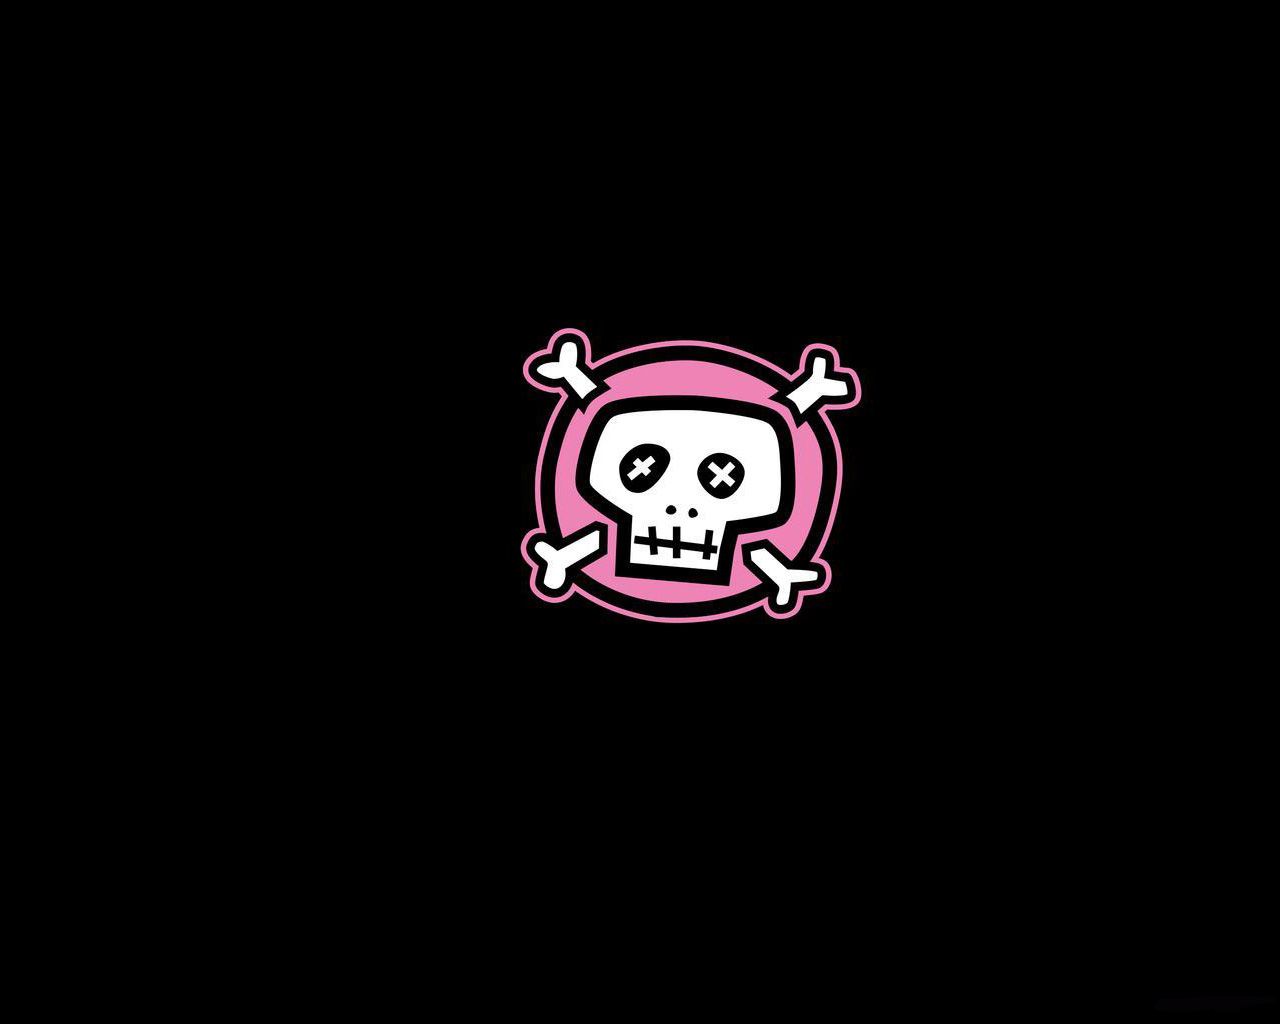 Free download Download Funny Skulls wallpaper emo skull [1280x1024] for your Desktop, Mobile & Tablet. Explore Skull Wallpaper Image. HD Skull Wallpaper, Free Skull Wallpaper, Skull Wallpaper For Desktop